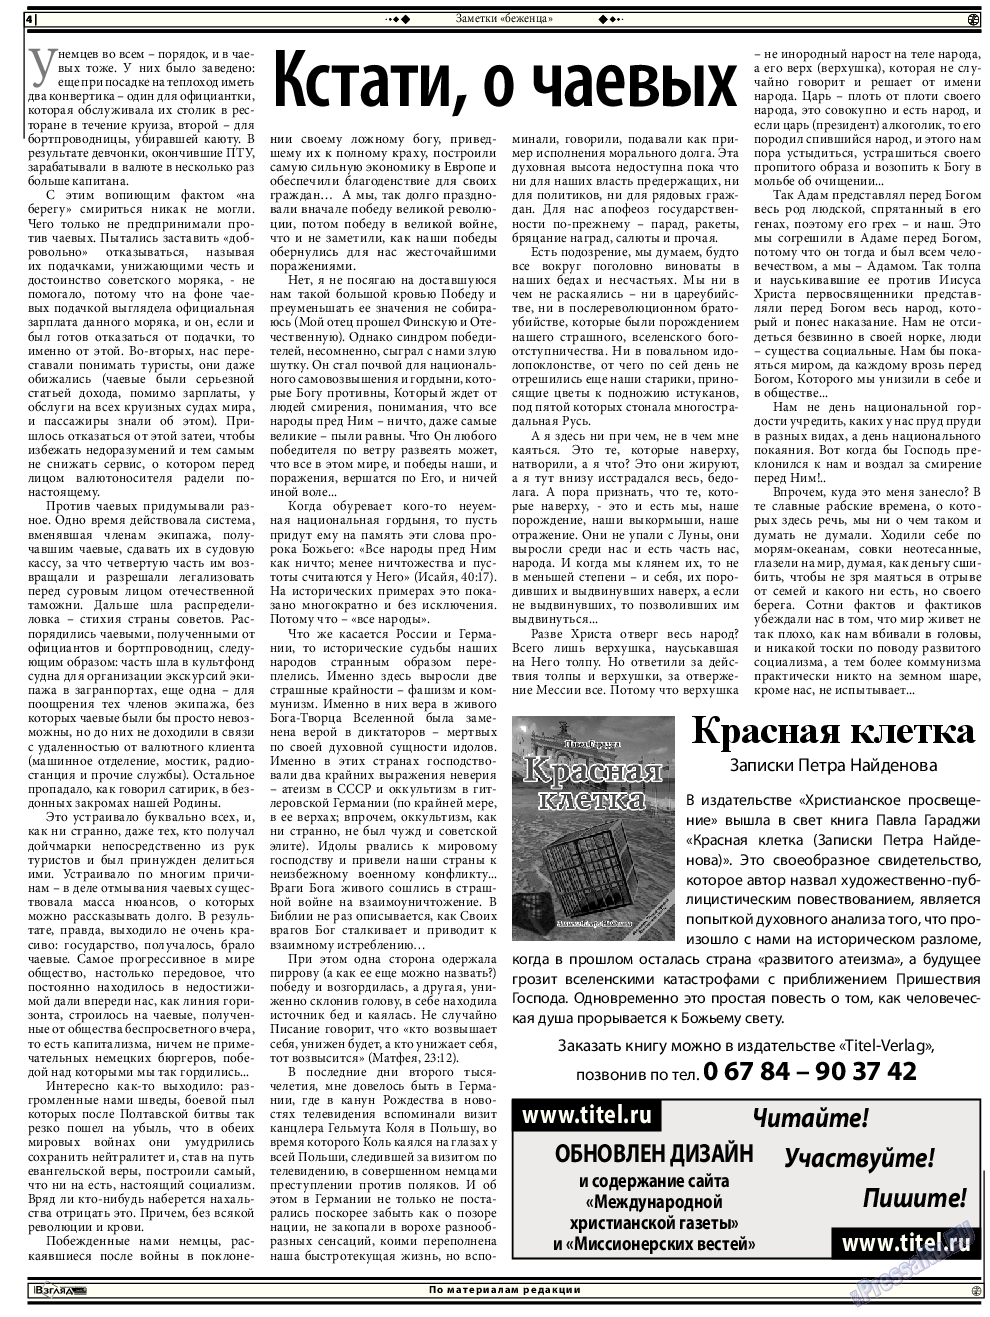 Христианская газета, газета. 2014 №9 стр.18